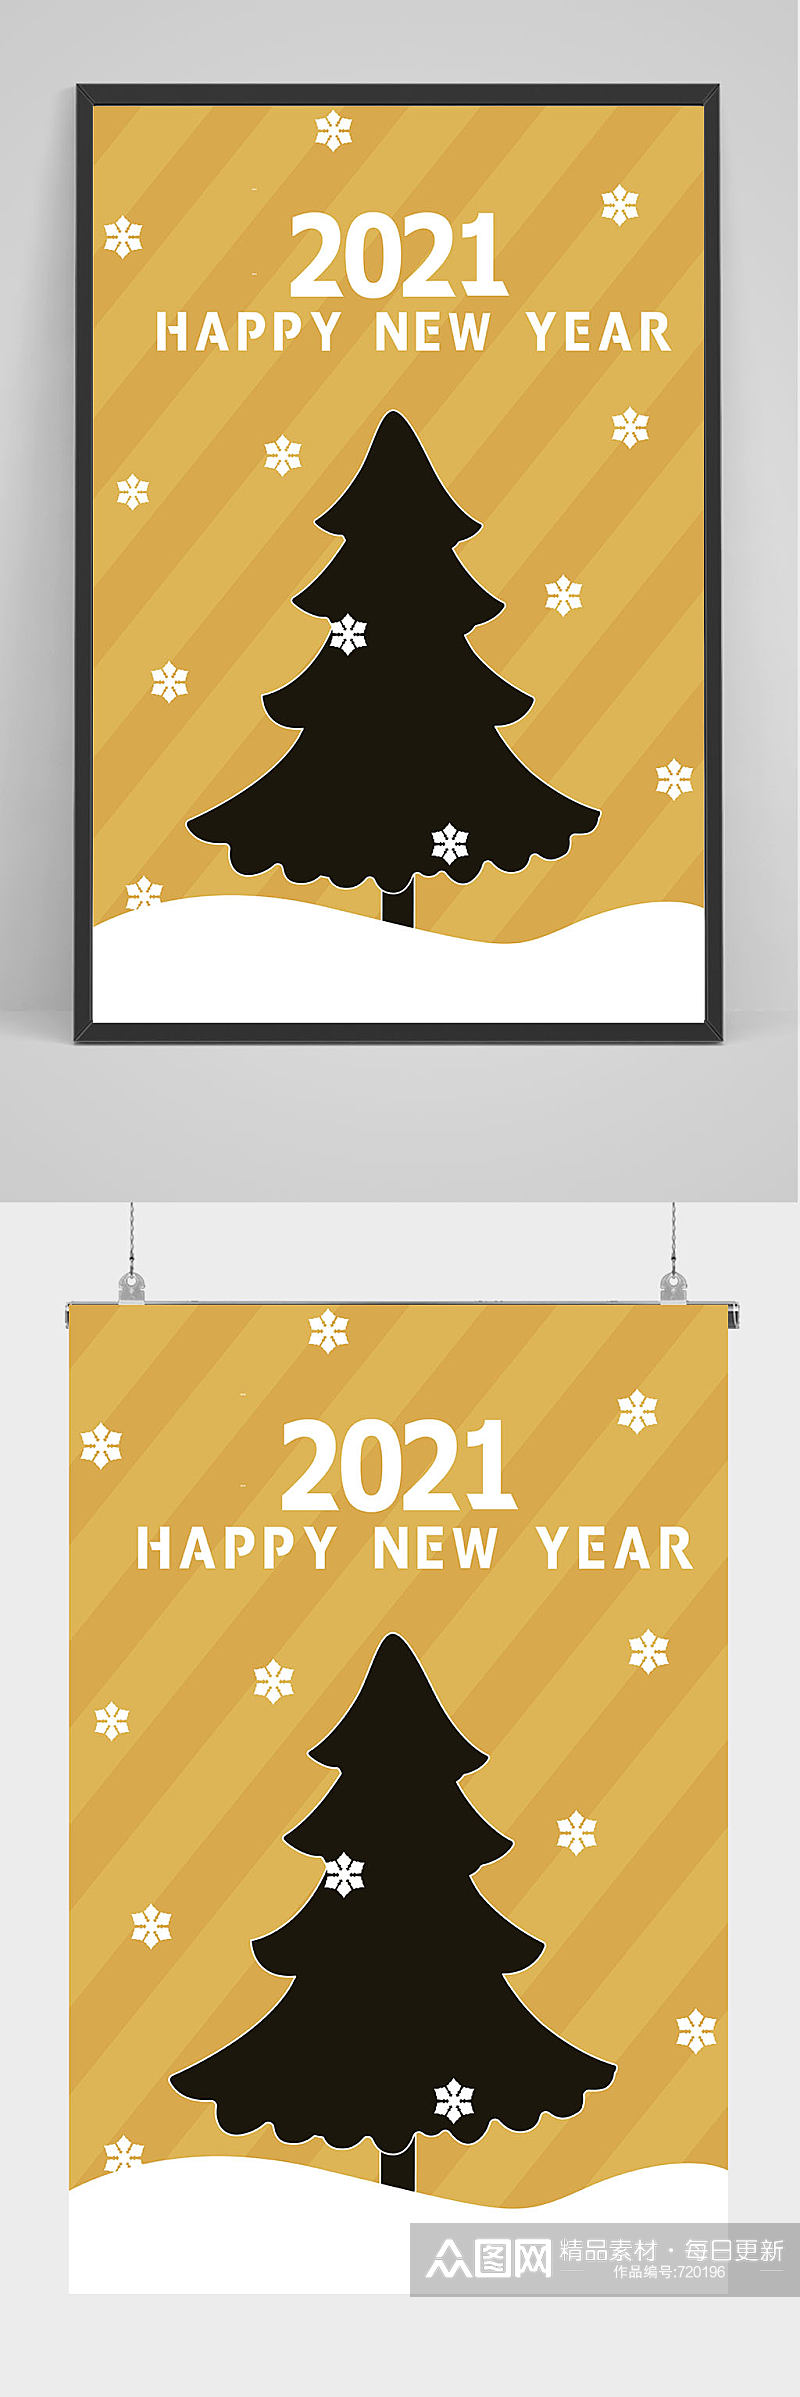 创意简洁2021年新年海报设计素材